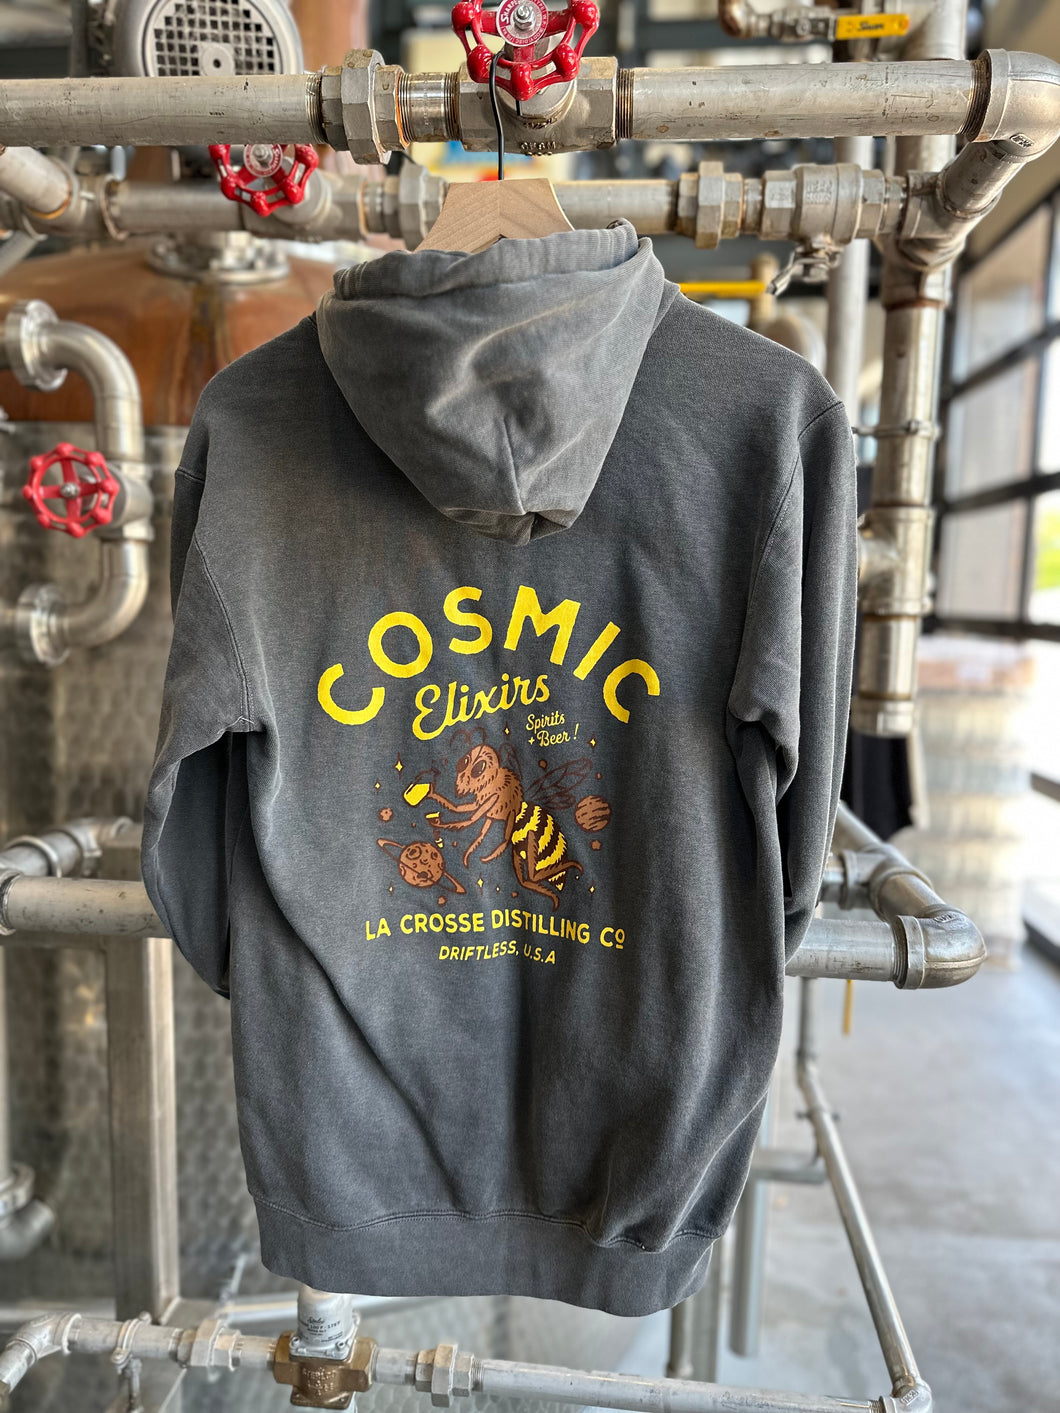 Cosmic Sweatshirt